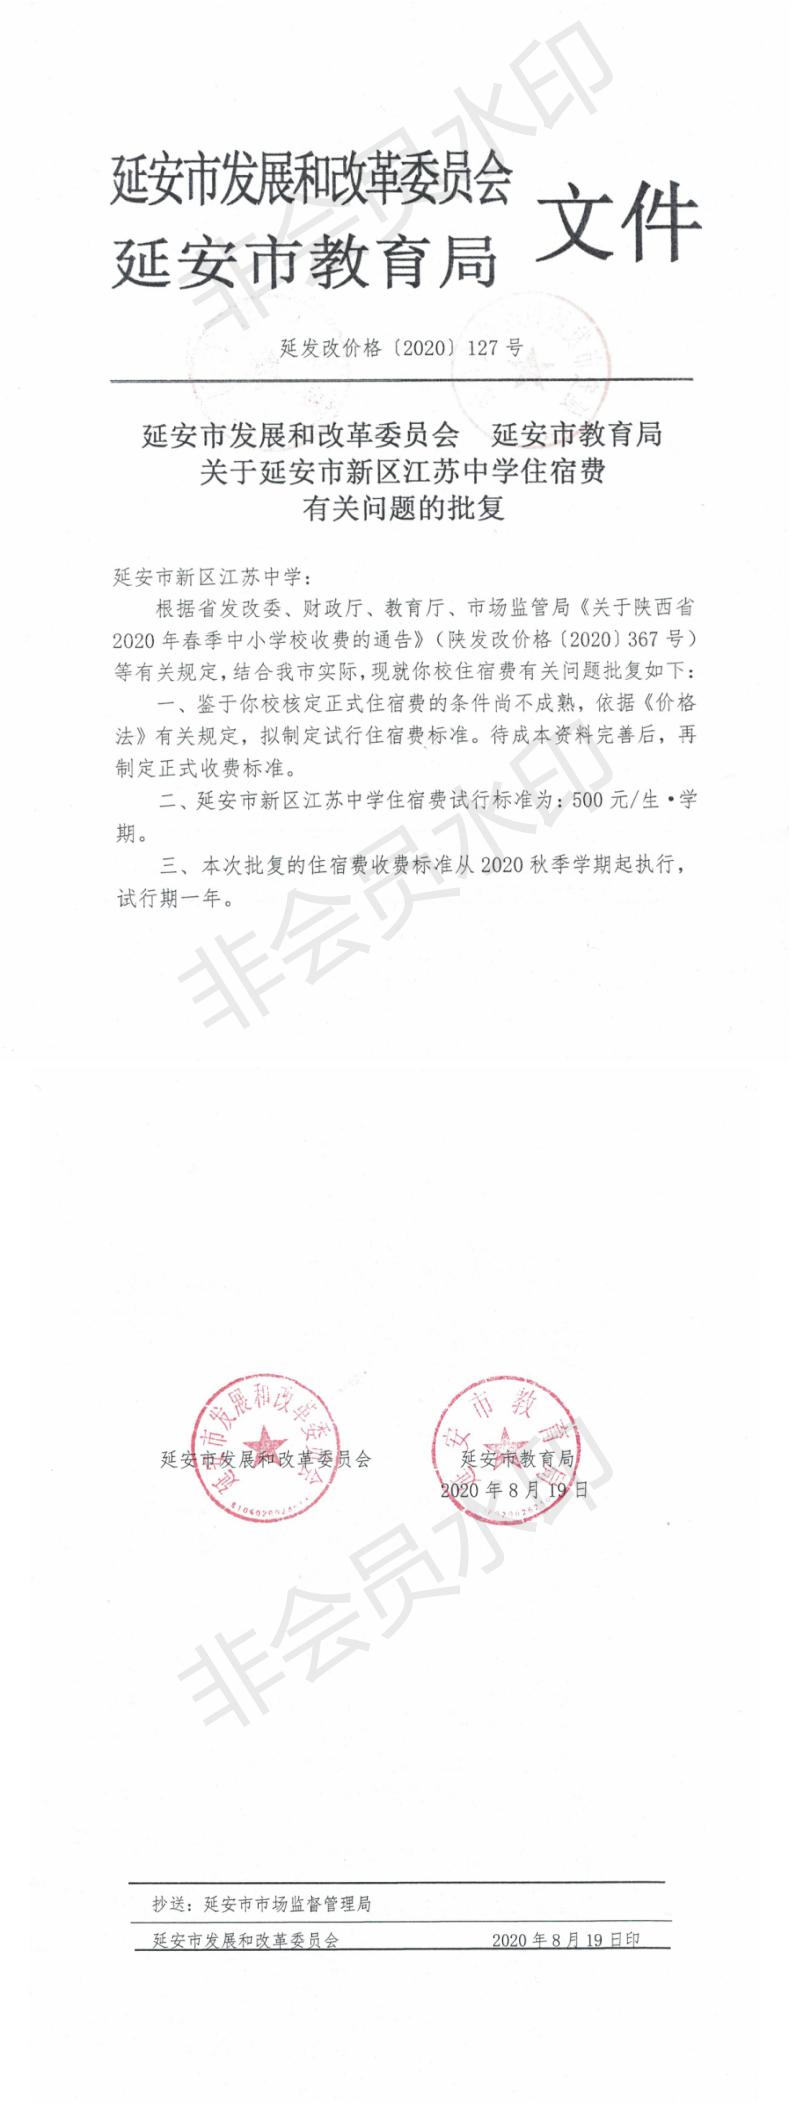 學校(xiào)通知公告欄，2020.8.20總務處發布.jpg